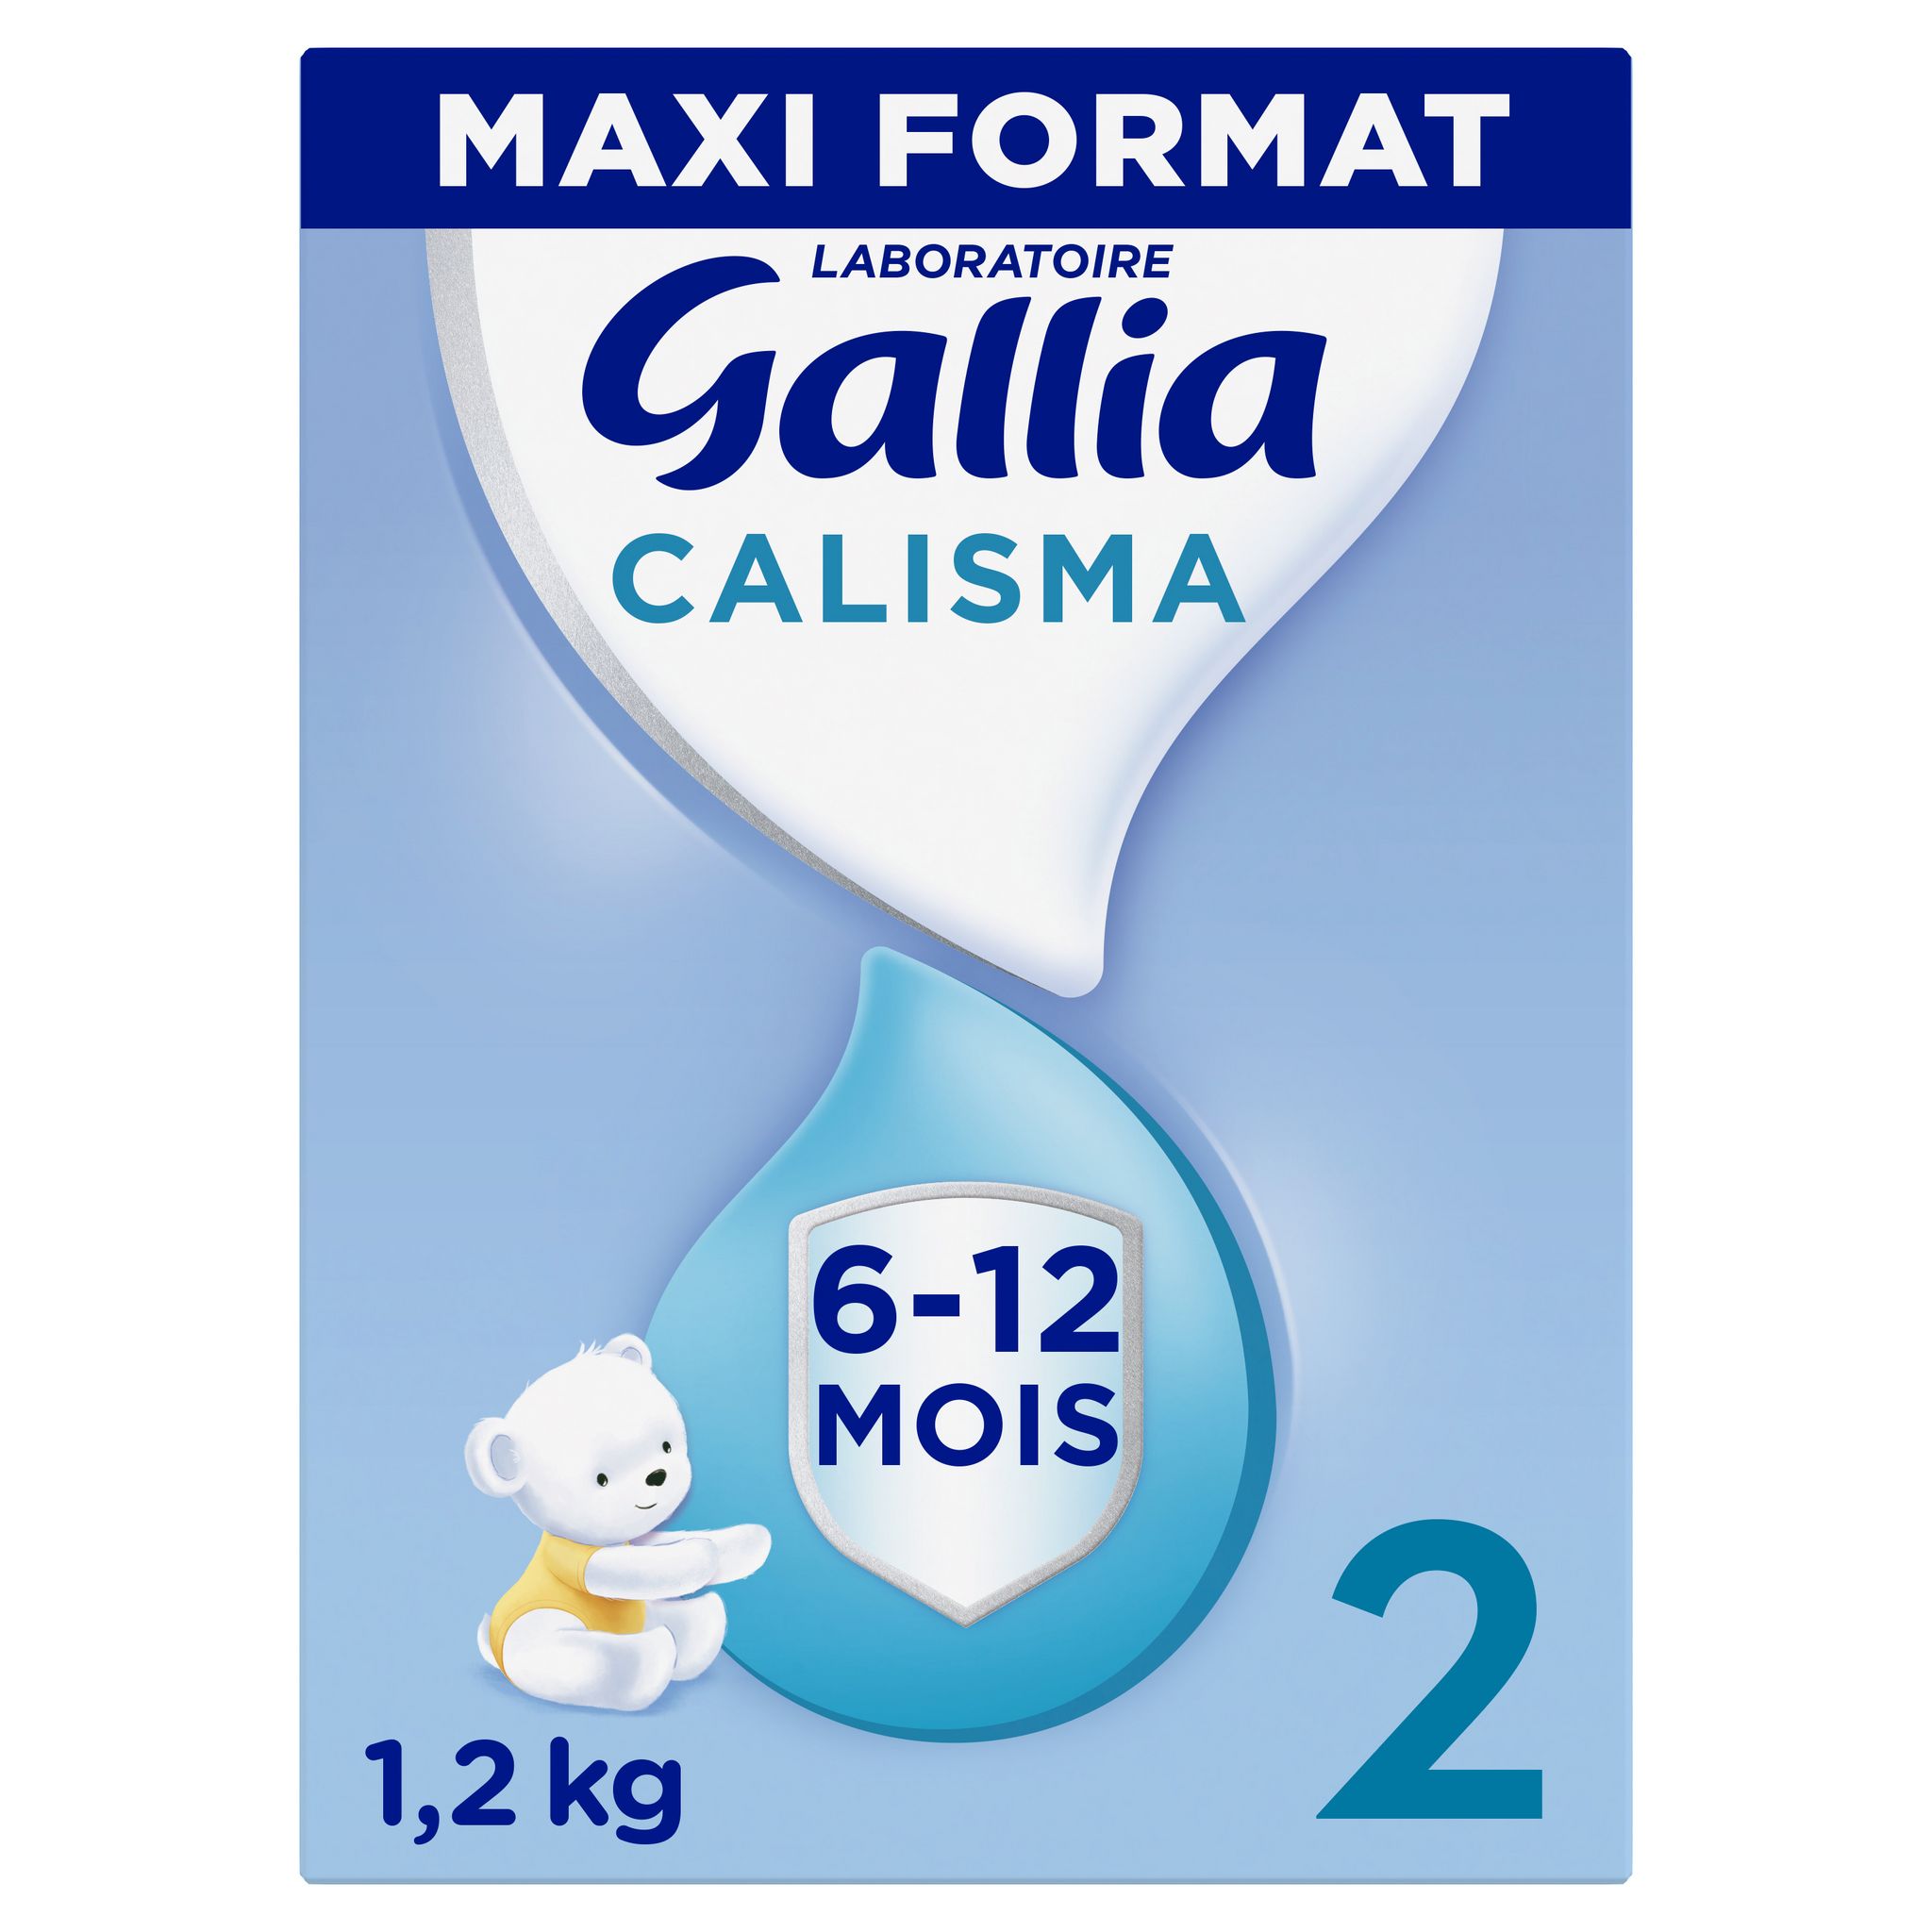 GALLIA Calisma 2 lait 2ème âge en poudre dès 6 mois 900g pas cher